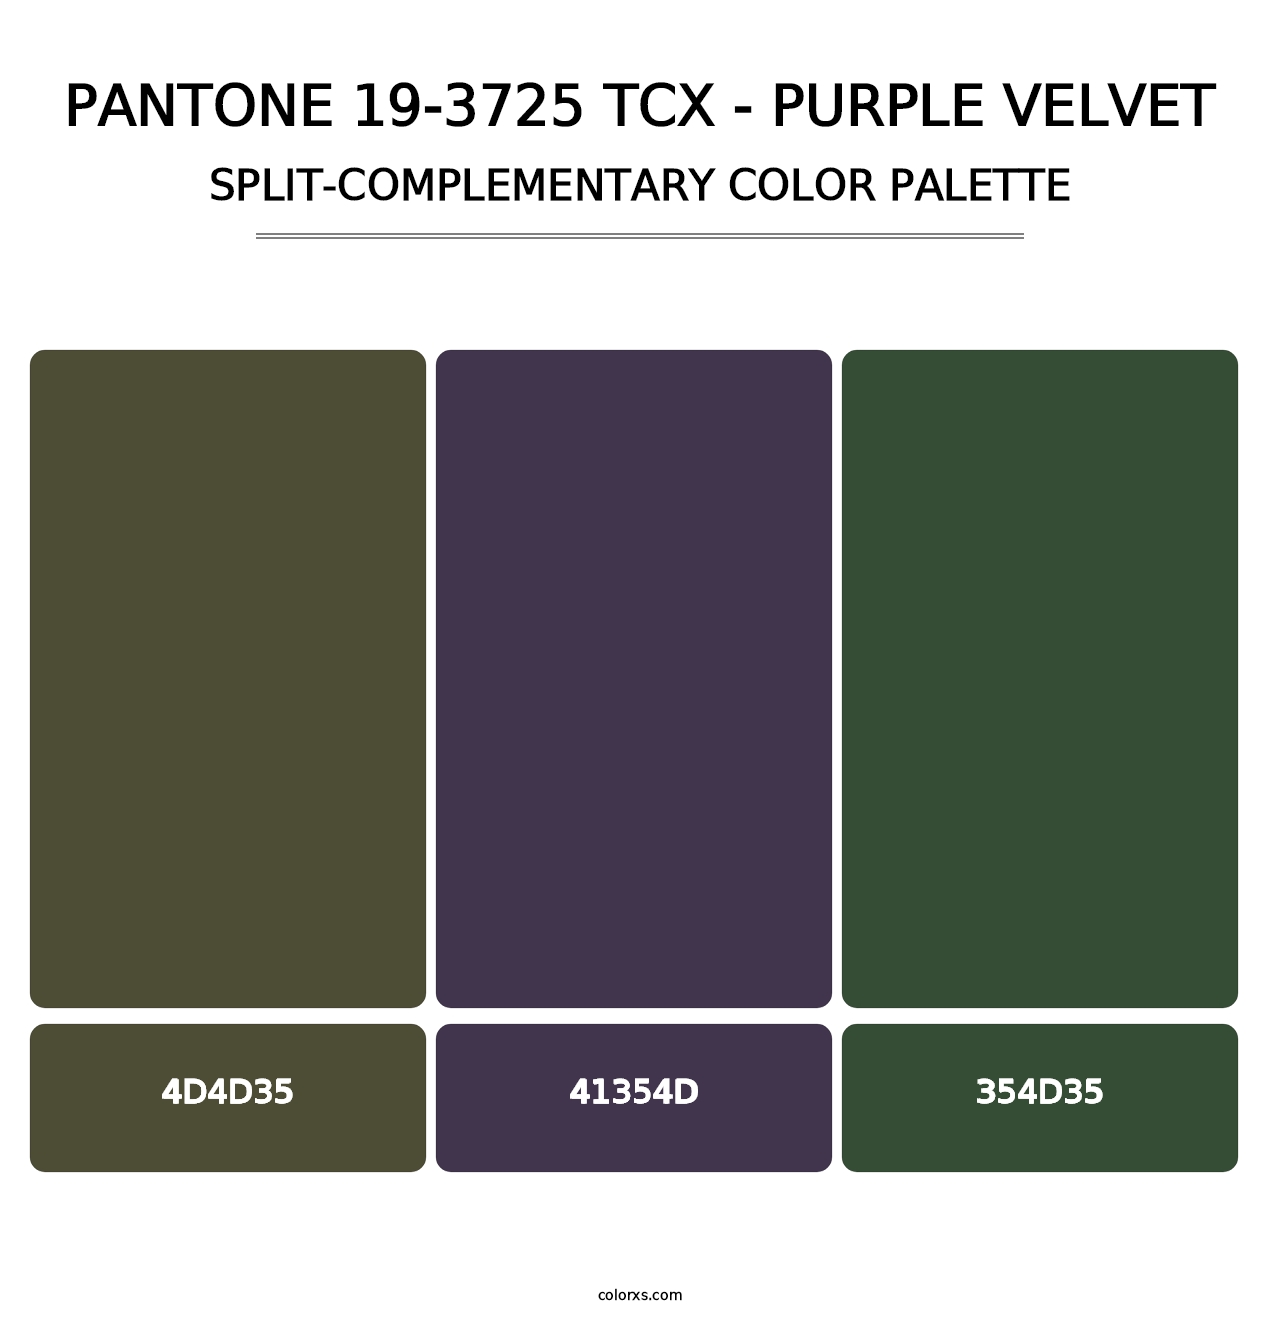 PANTONE 19-3725 TCX - Purple Velvet - Split-Complementary Color Palette